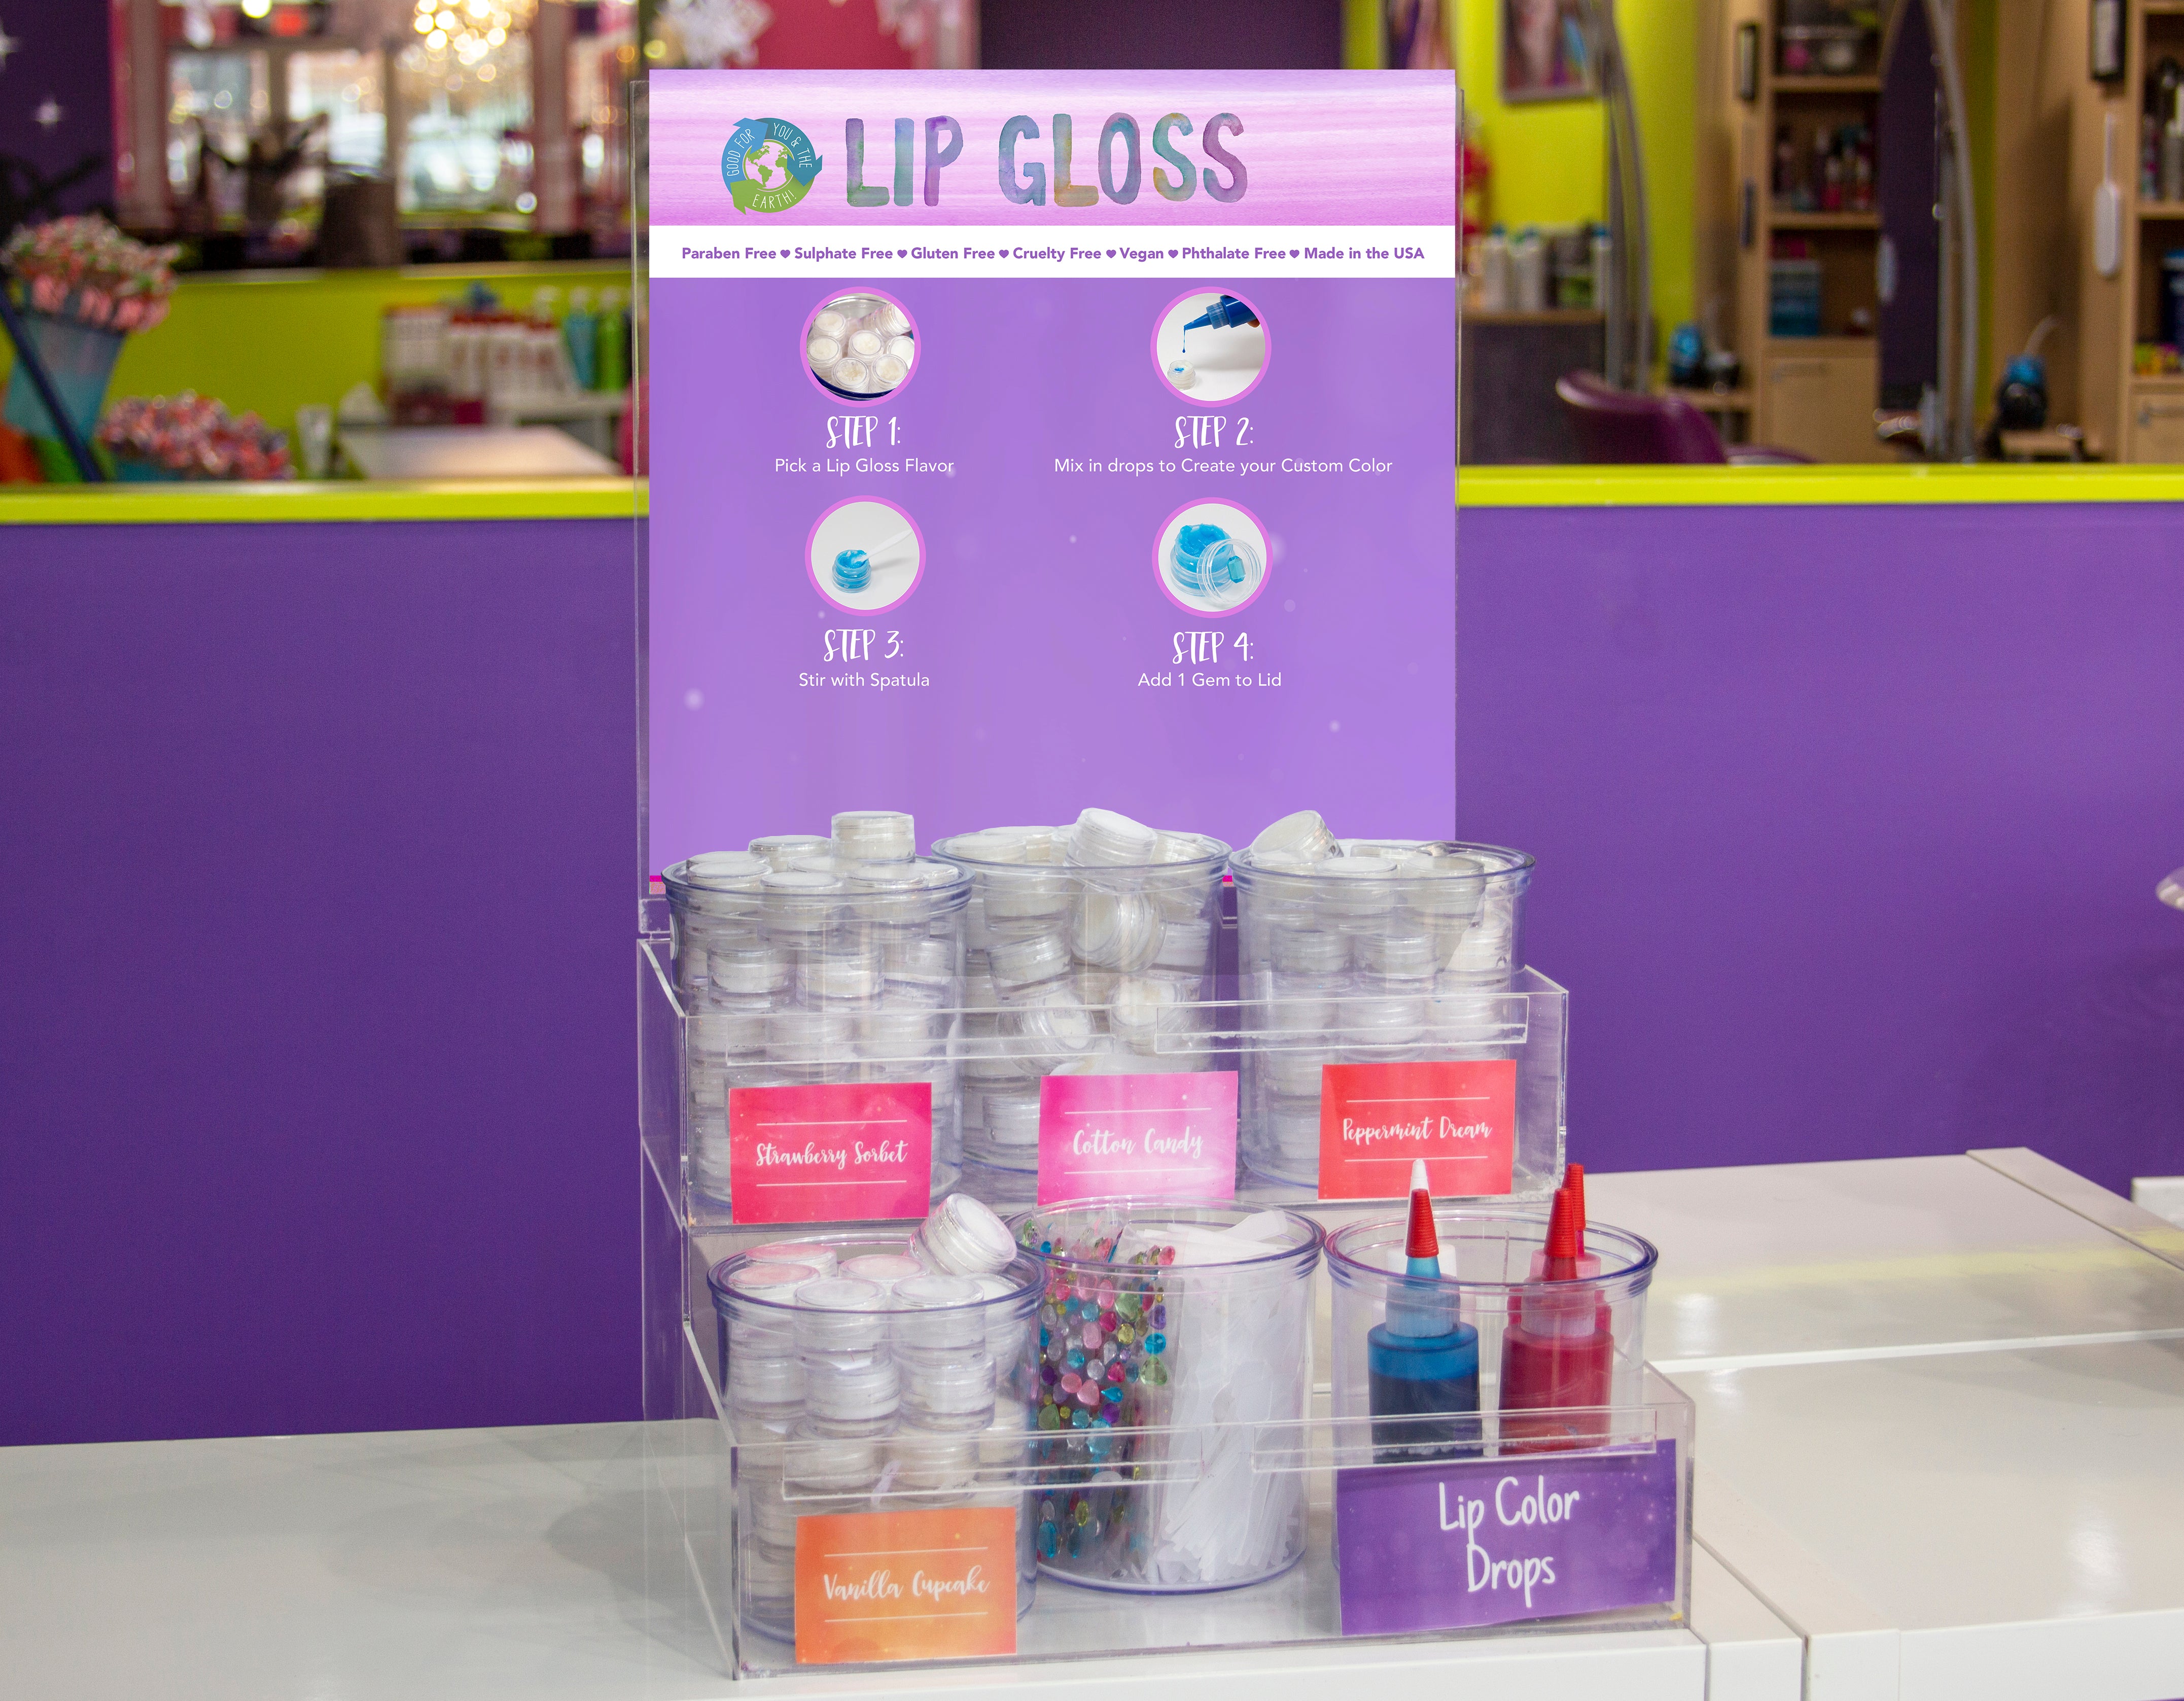 DIY Lip Gloss Making Kit - Lip Gloss Supplies to Make Your Own Lip Gloss,  Lip Gloss Making Supplies Set DIY Lip Gloss Kit for Girls, Beginner Lip